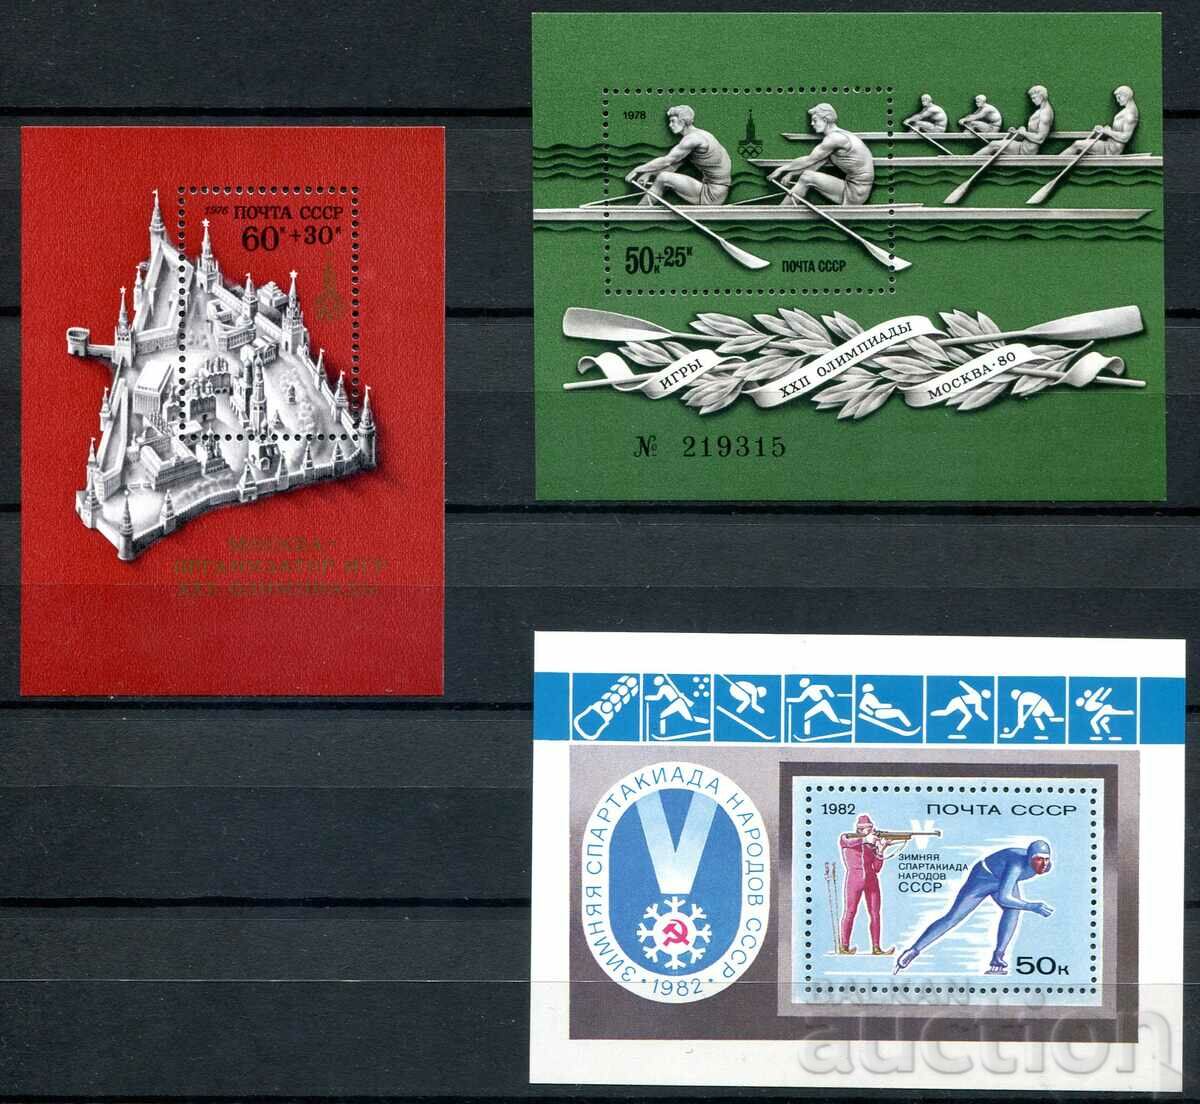 URSS MnH - 3 blocuri curate, sport, olimpiade